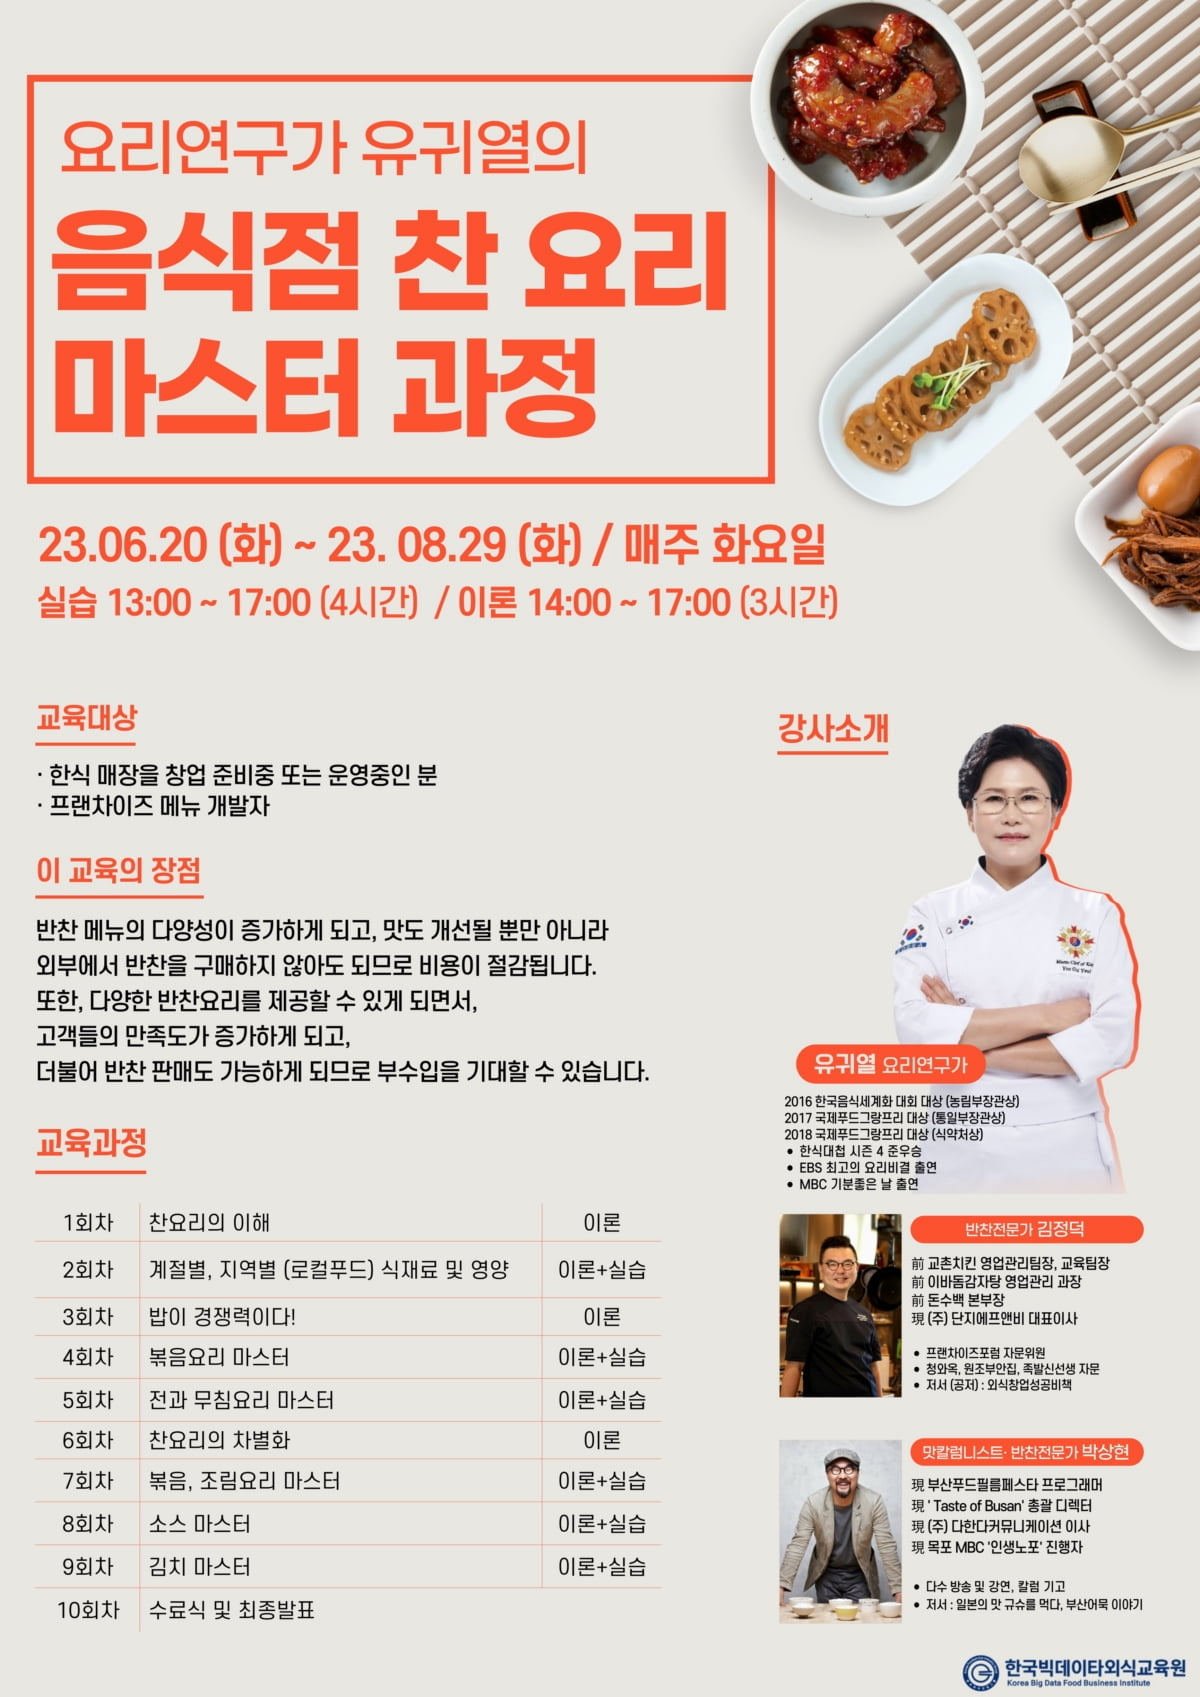 한국빅데이타외식교육원, 요리연구가 유귀열의 ‘음식점 찬 요리 마스터 과정’ 1기 모집